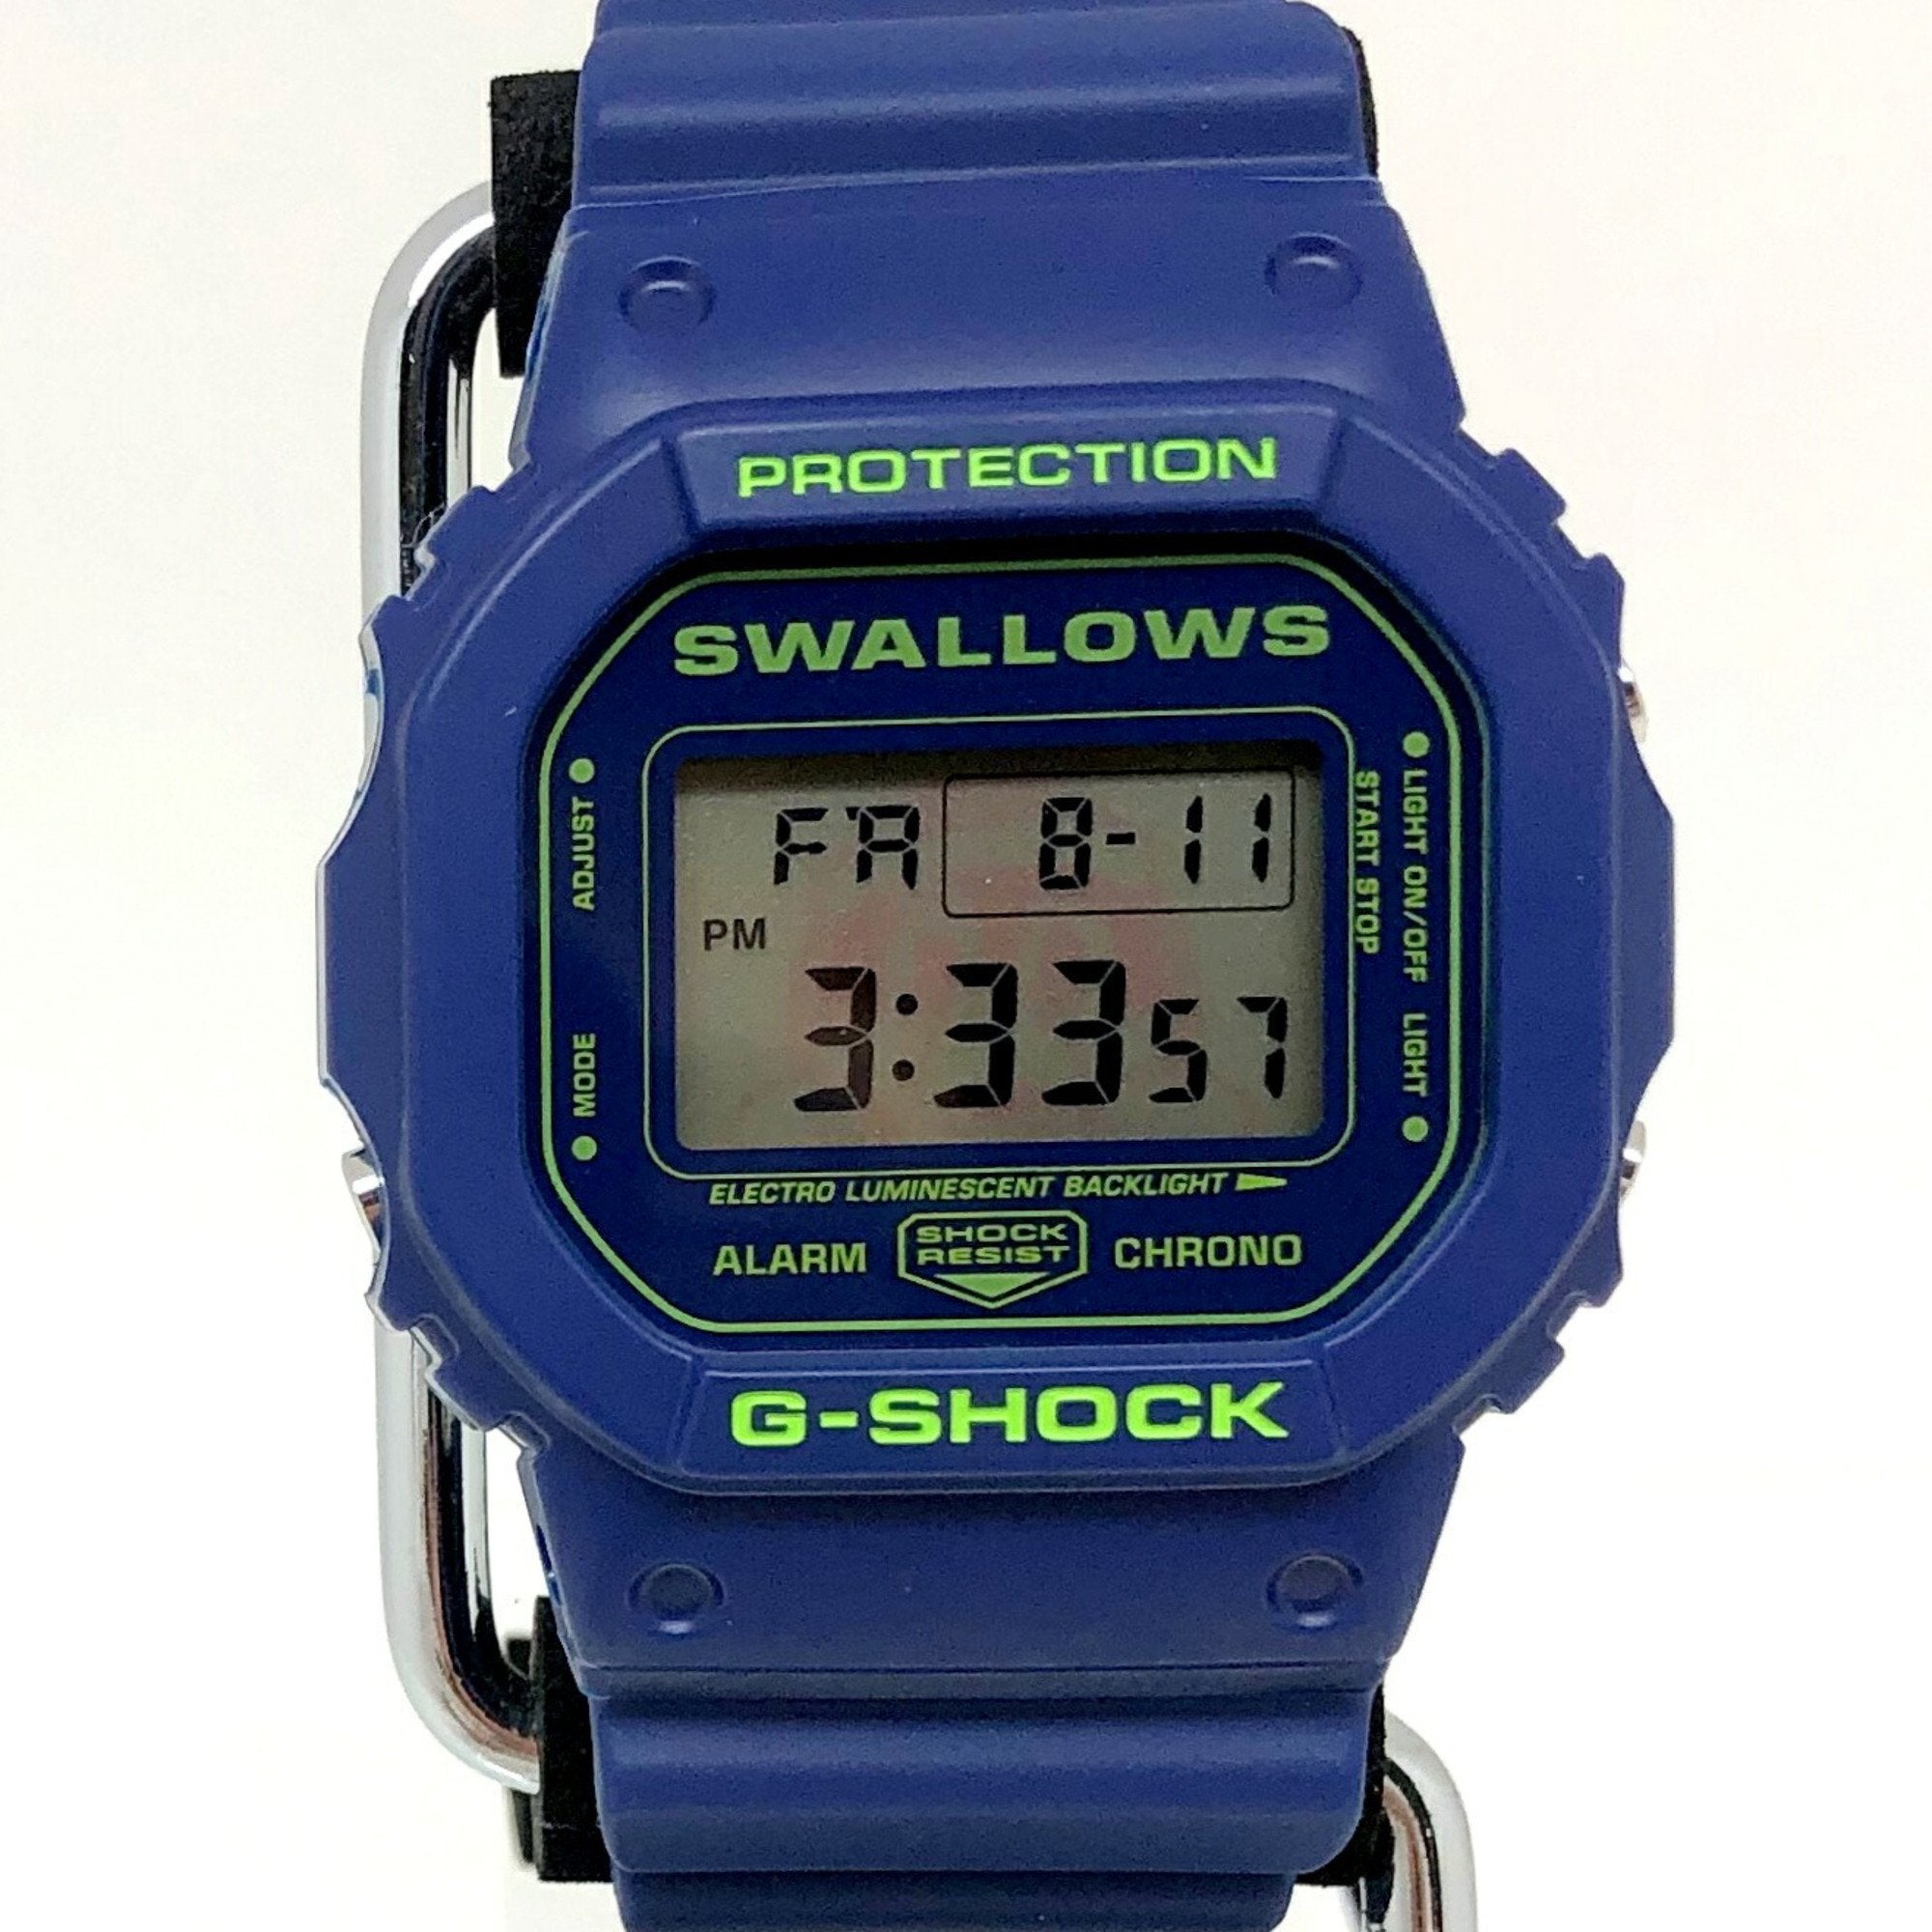 CASIO G-SHOCK G-Shock watch DW-5600VT Tokyo Yakult Swallows collaborat